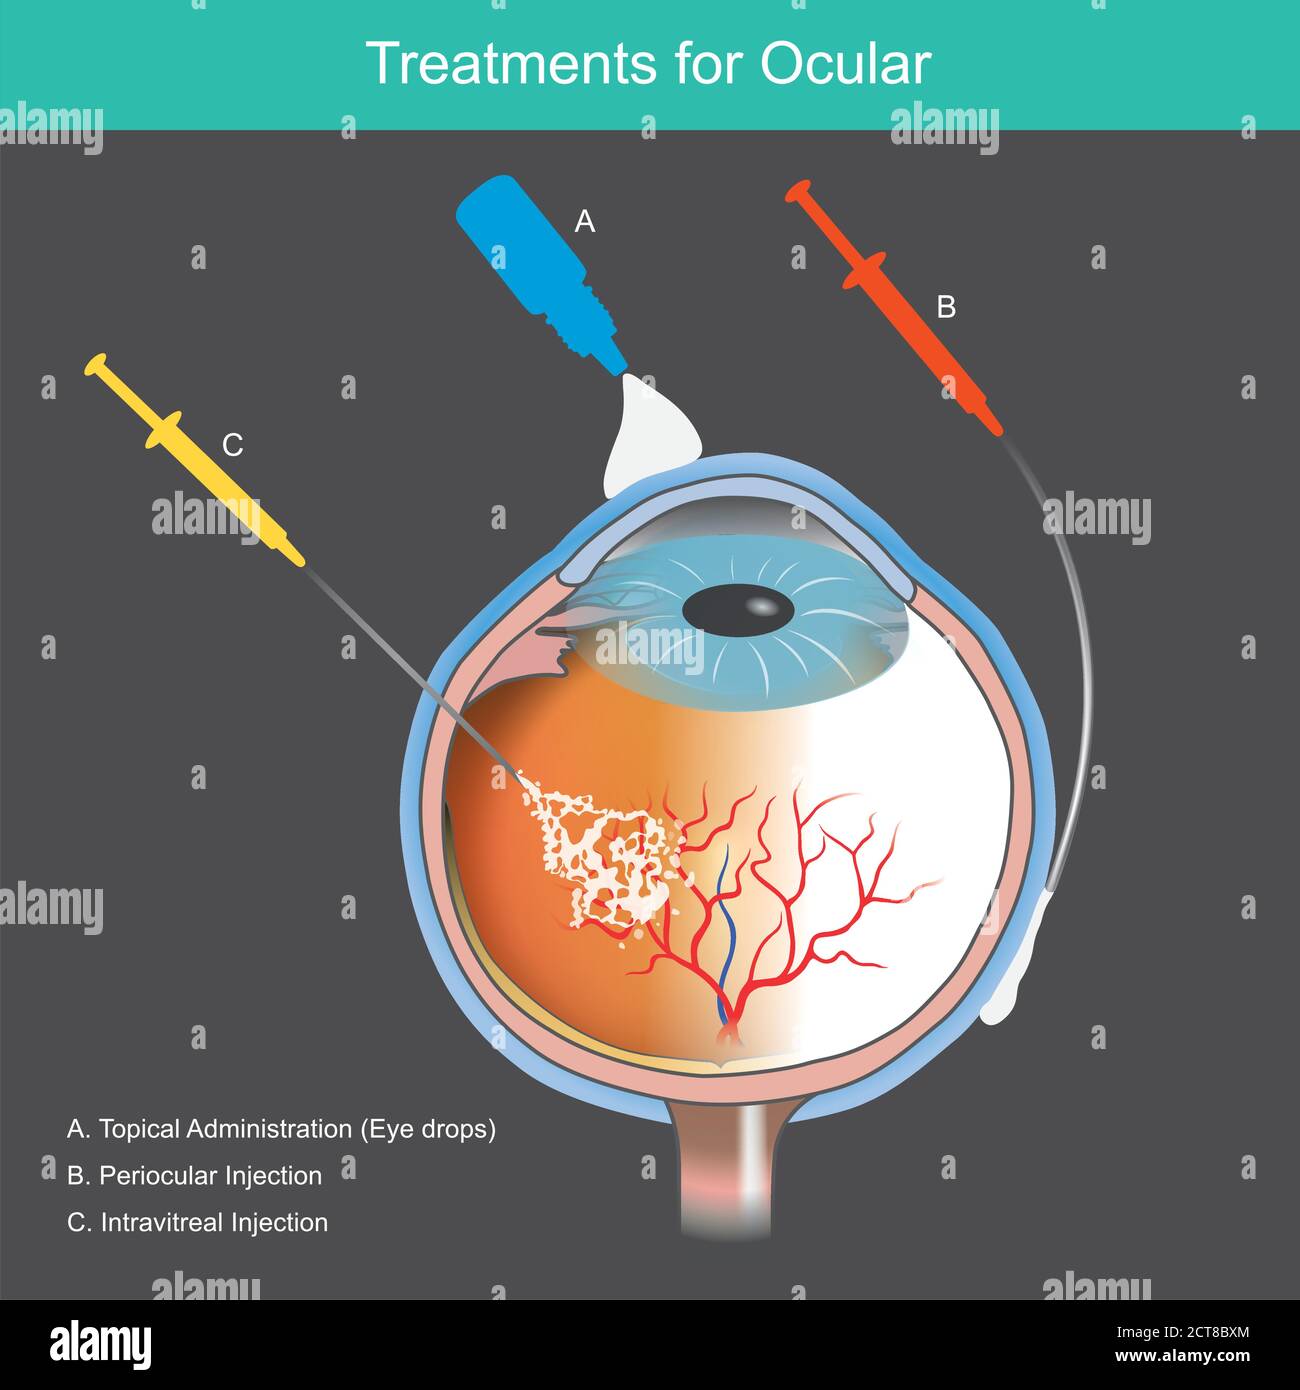 Behandlungen für Okular. Illustration erklären Behandlung von Netzhauterkrankungen durch Blutgefäß abnorm des Auges verursacht. Stock Vektor